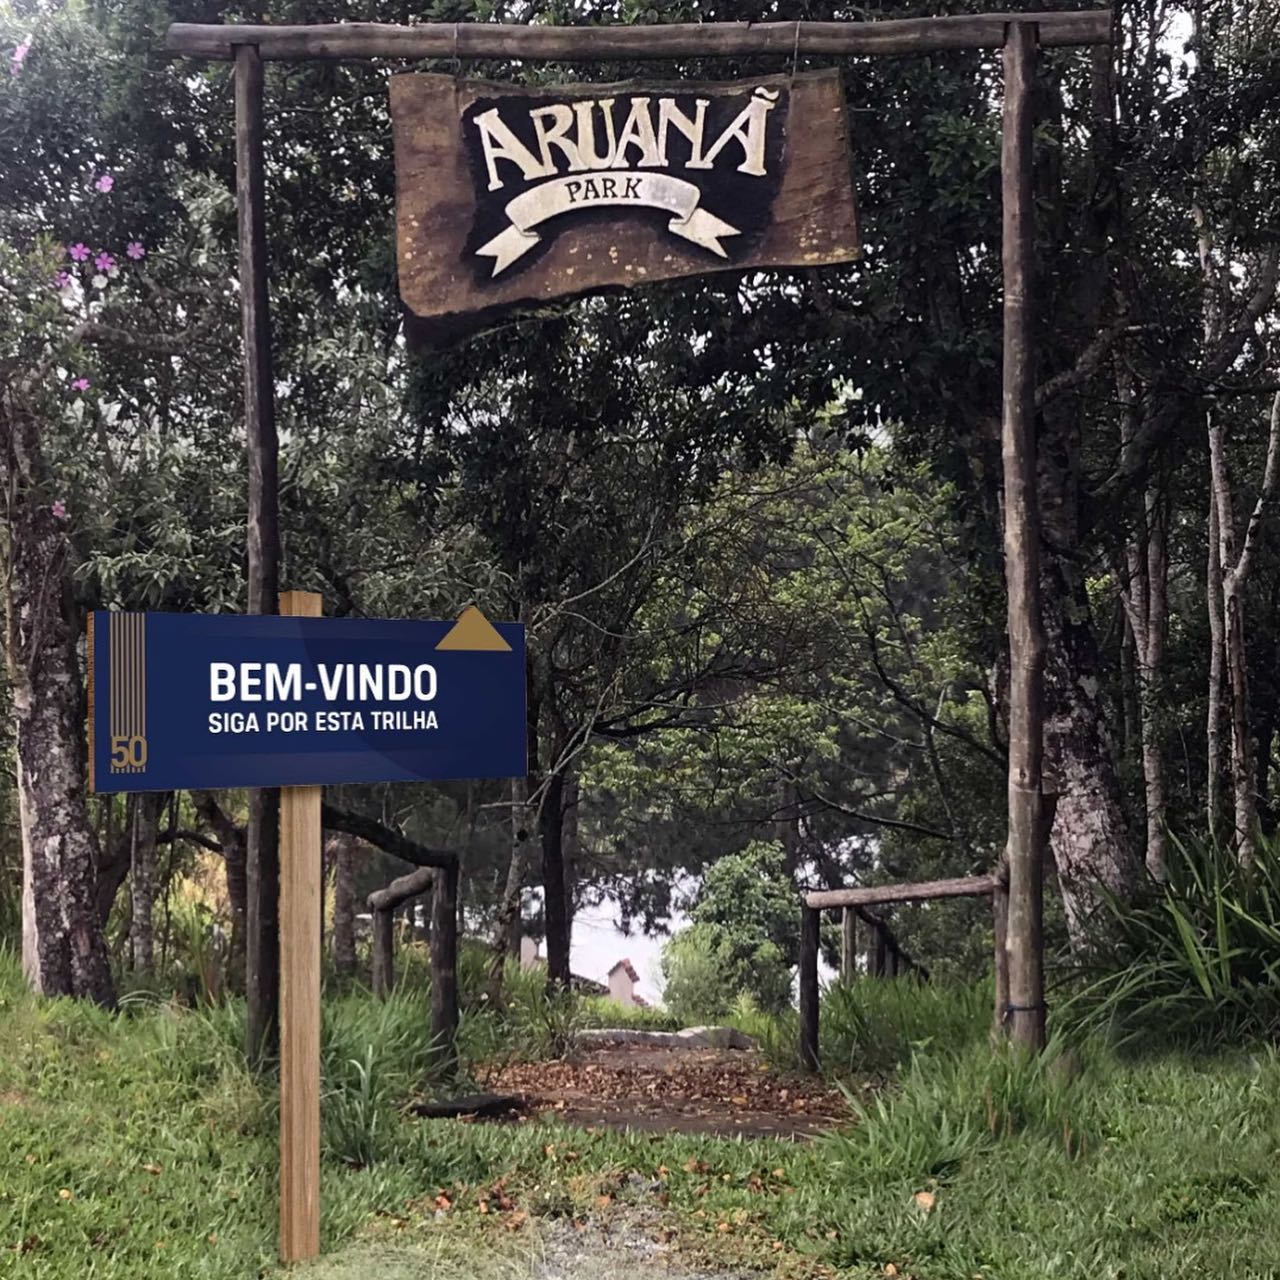 O acampamento está localizado no coração da Mata Atlântica  Divulgação/Aruanã Acampamentos e Eventos